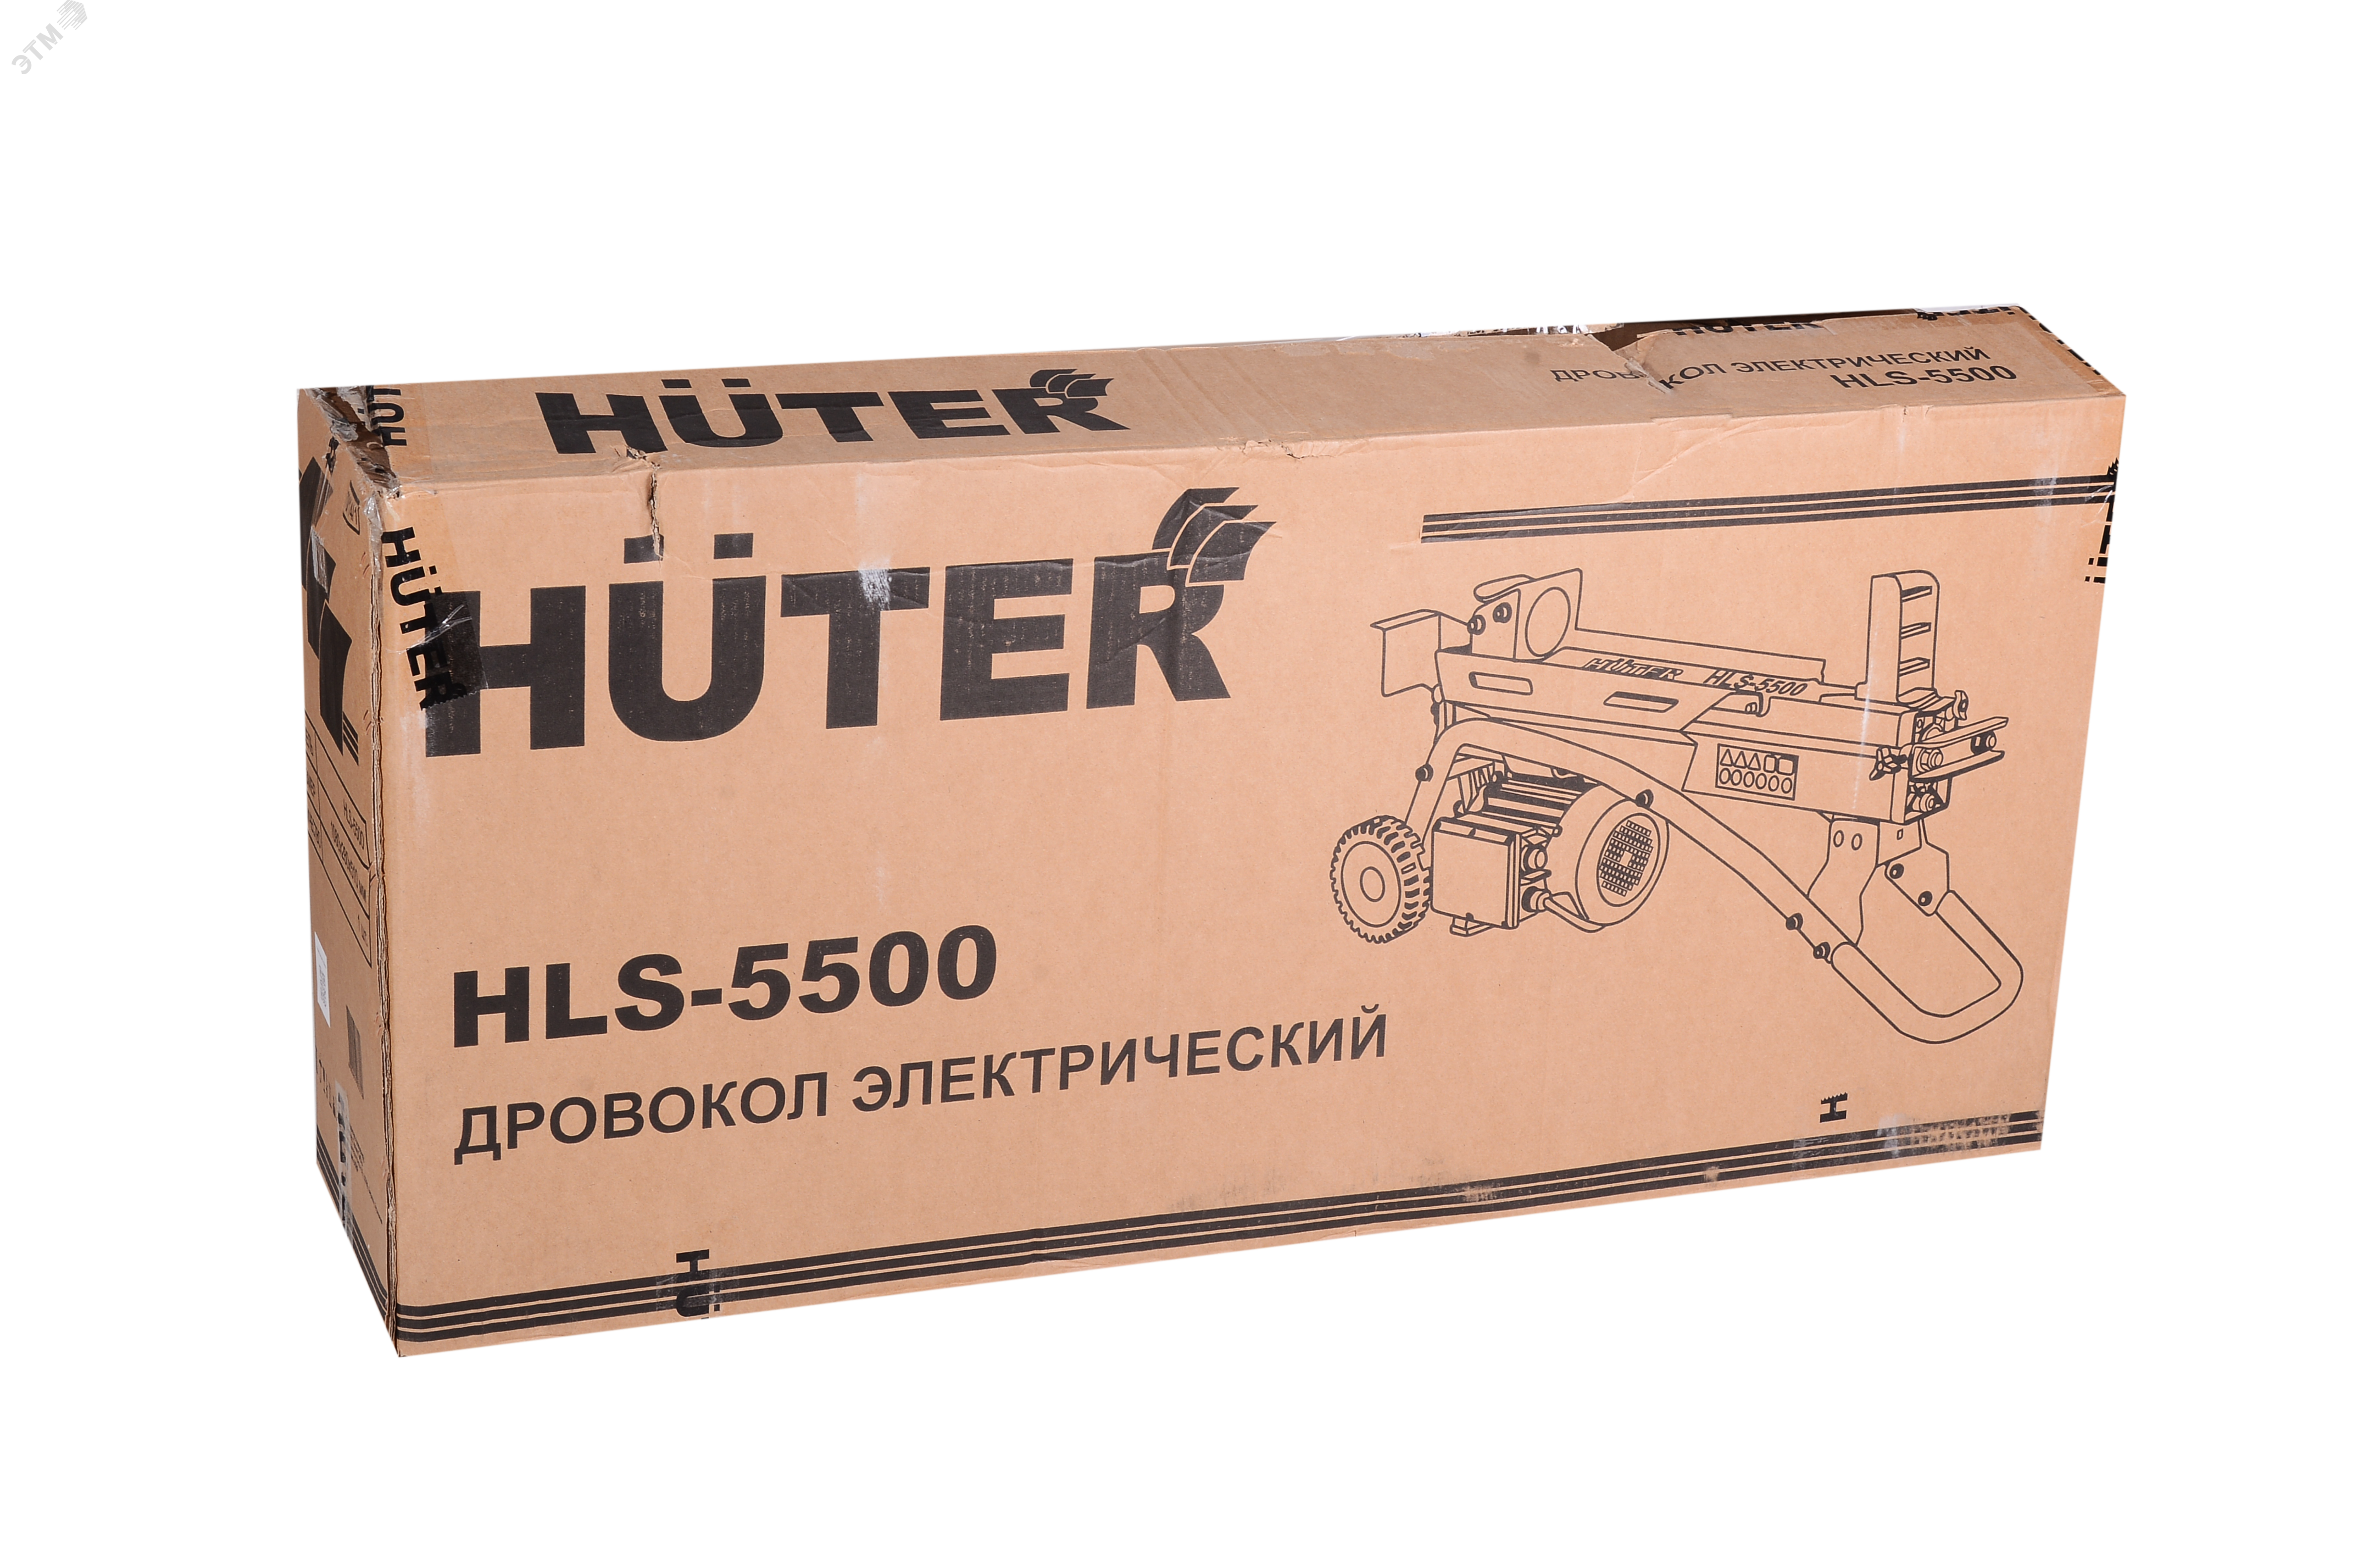 Дровокол электрический HLS-5500 70/14/1 Huter - превью 5